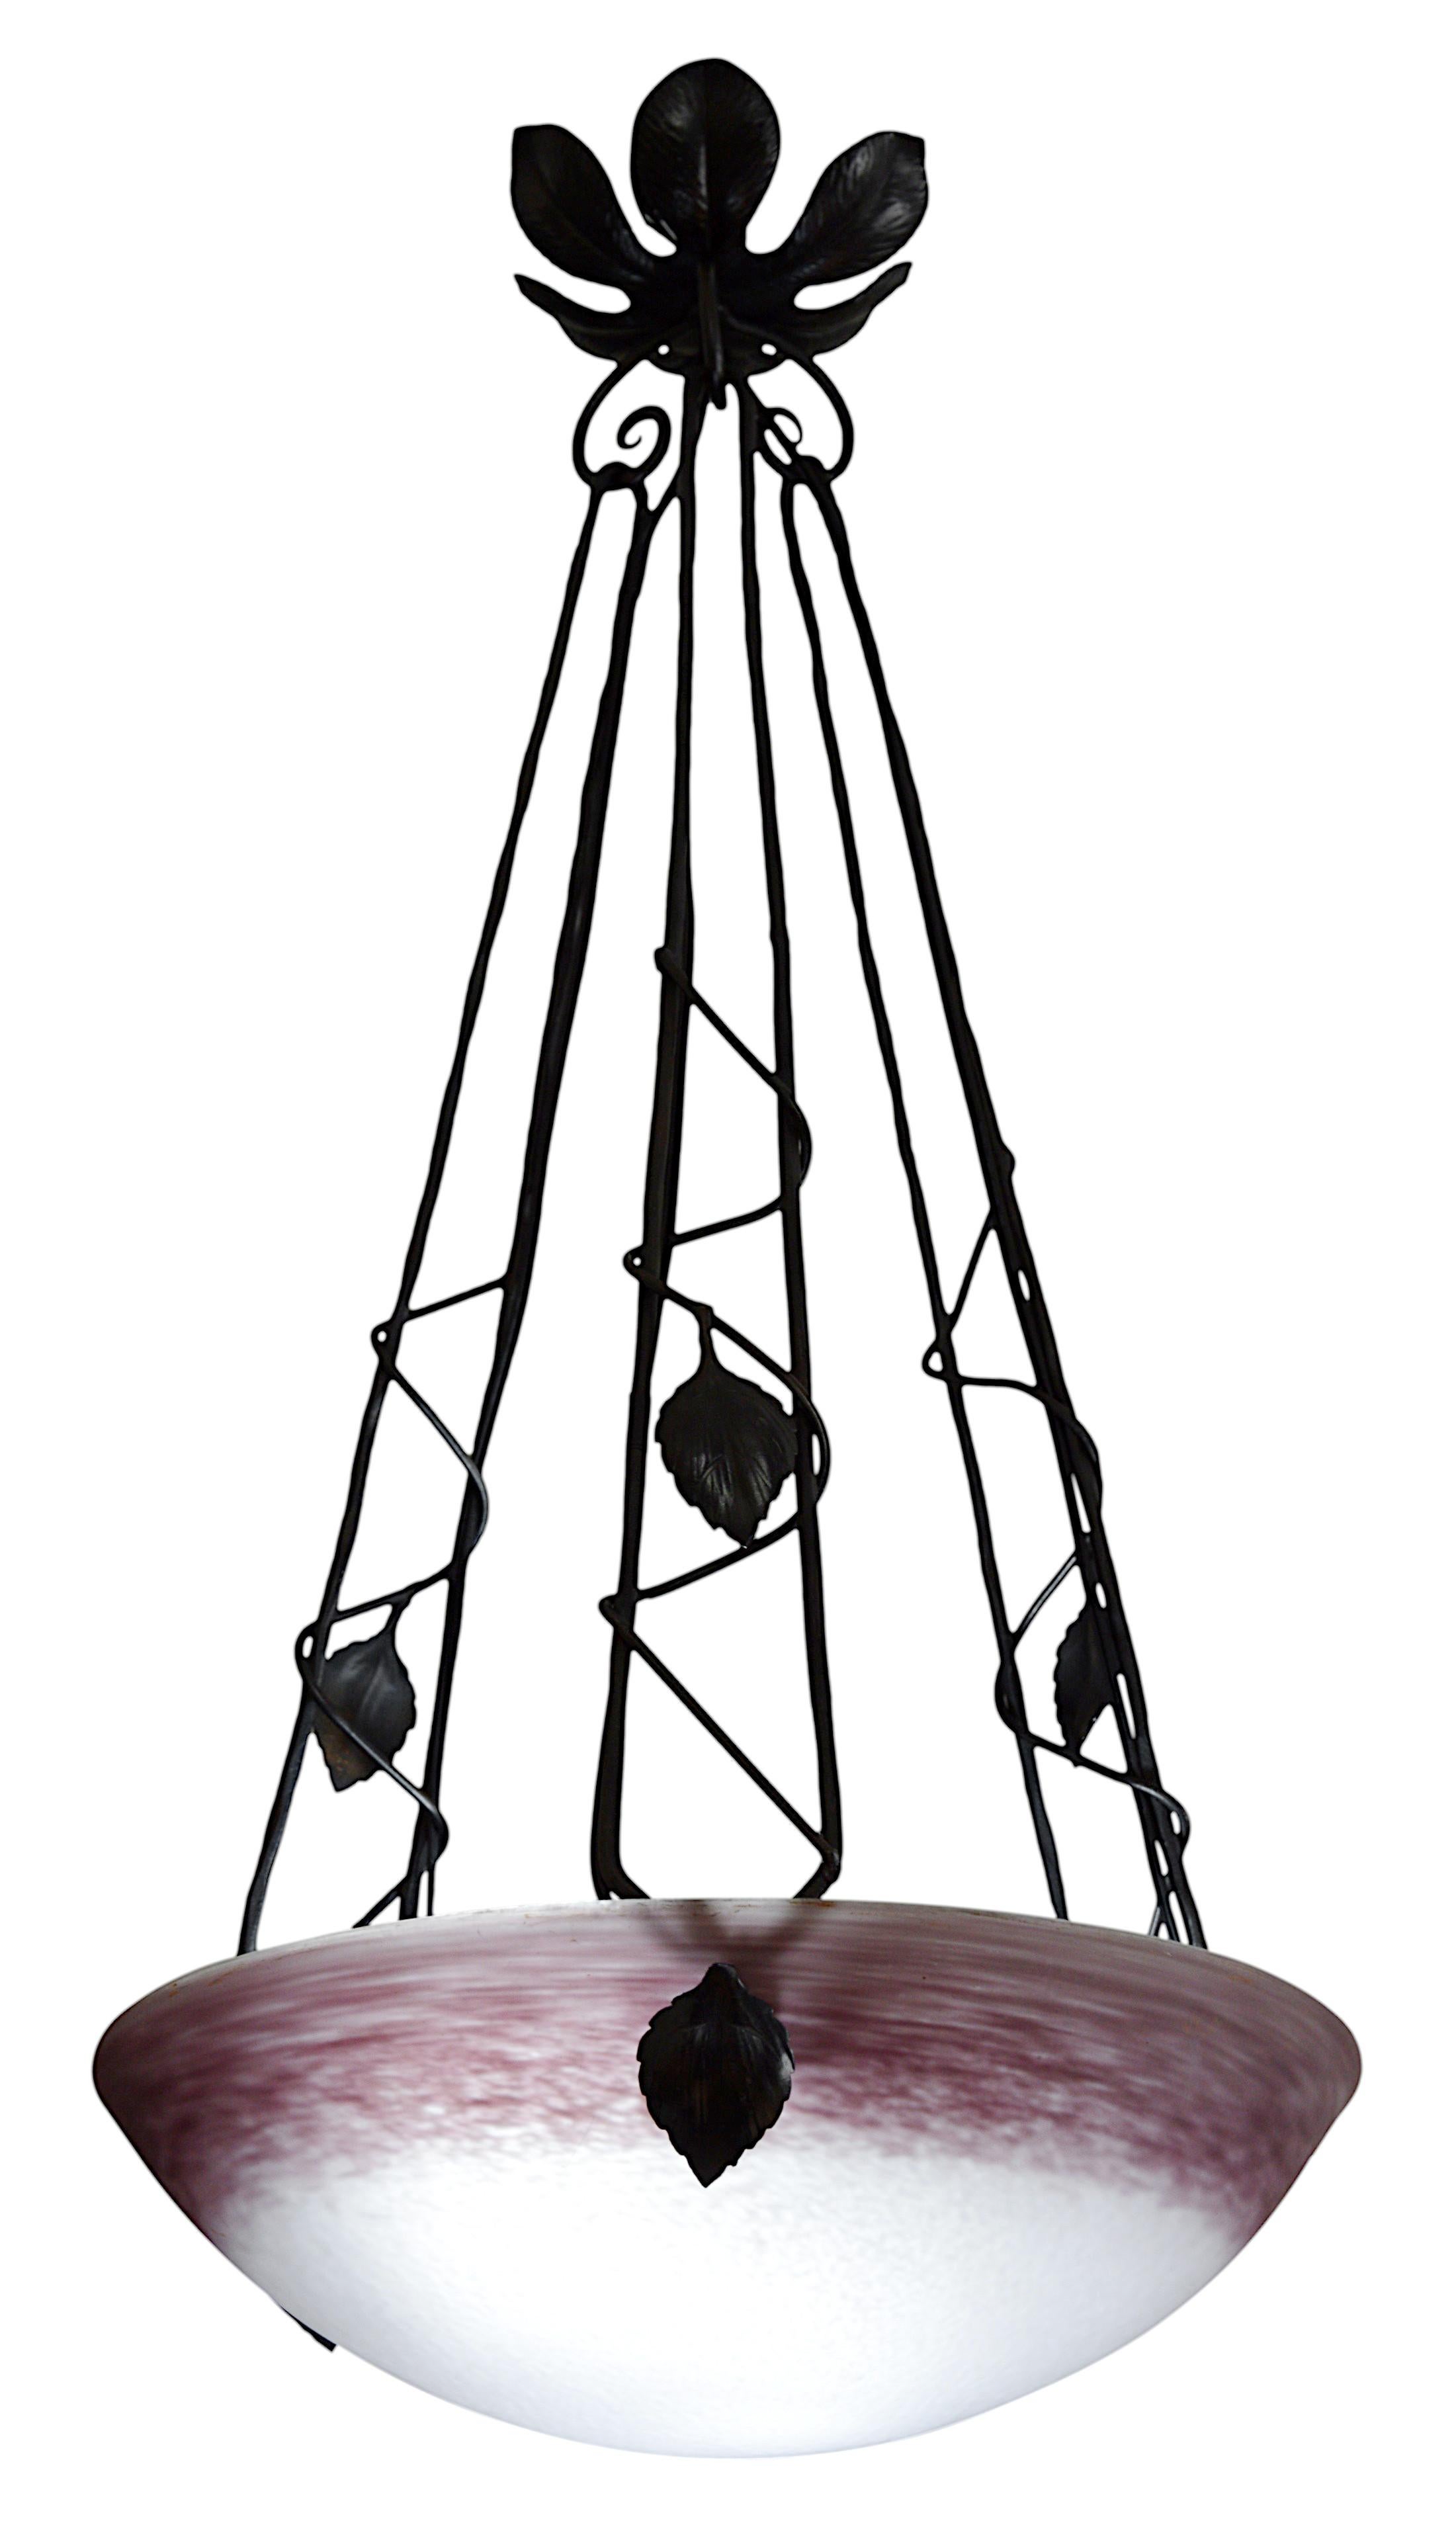 Französischer Art-Déco-Hängeleuchter von DEGUE (Compiegne), Frankreich, Ende der 1920er Jahre. Schirm aus gesprenkeltem Glas. Farben: lila und weiß. Schmiedeeiserne Halterung. Höhe: 65 cm (25,6